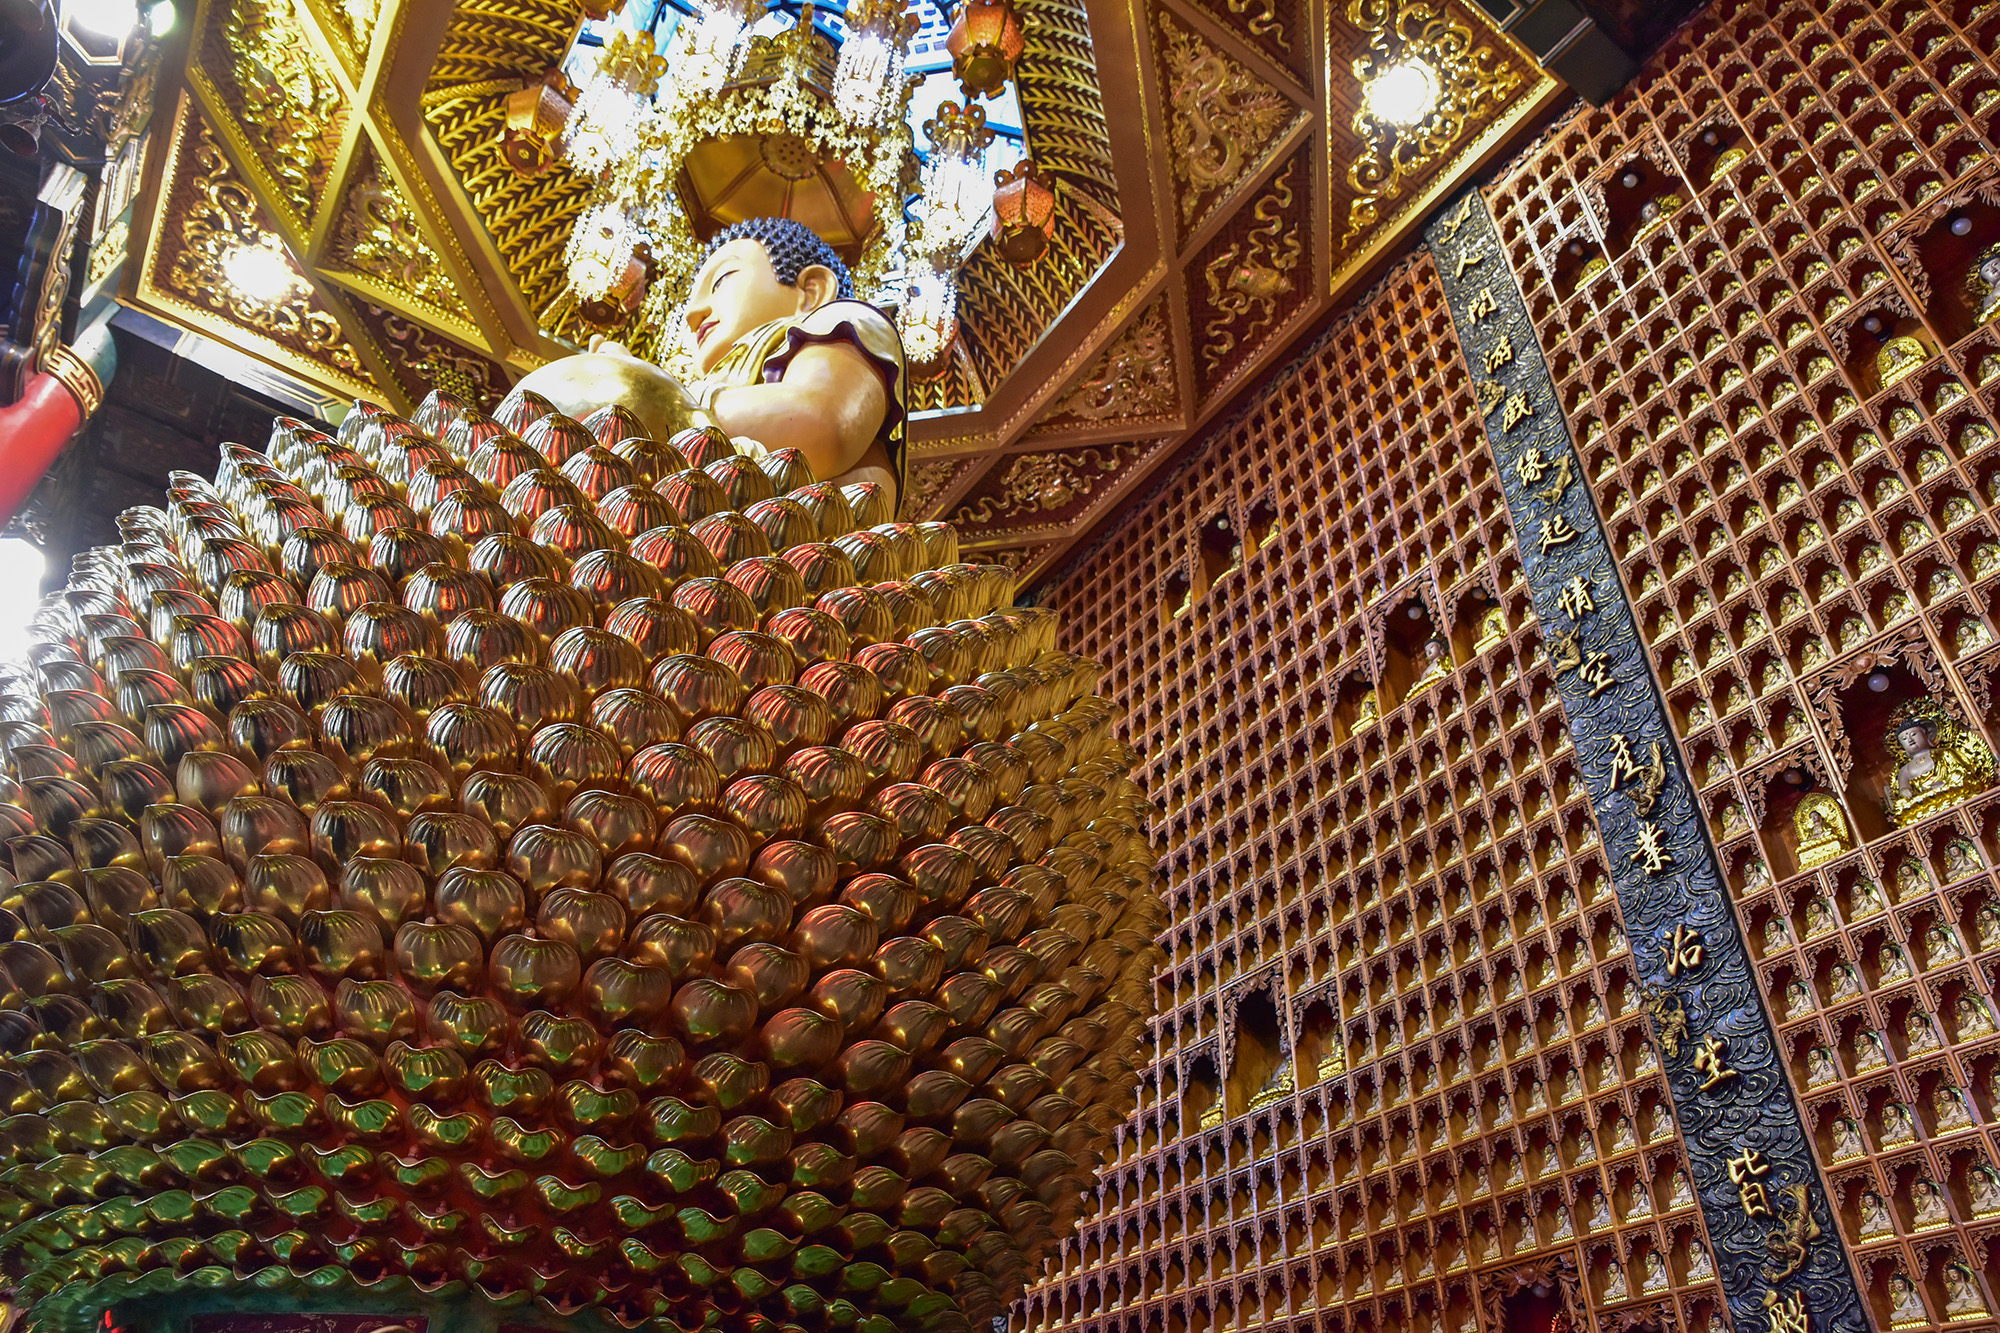 Kỳ vĩ chánh điện chùa trưng biện 10.000 tượng Phật ở TP.HCM - 4